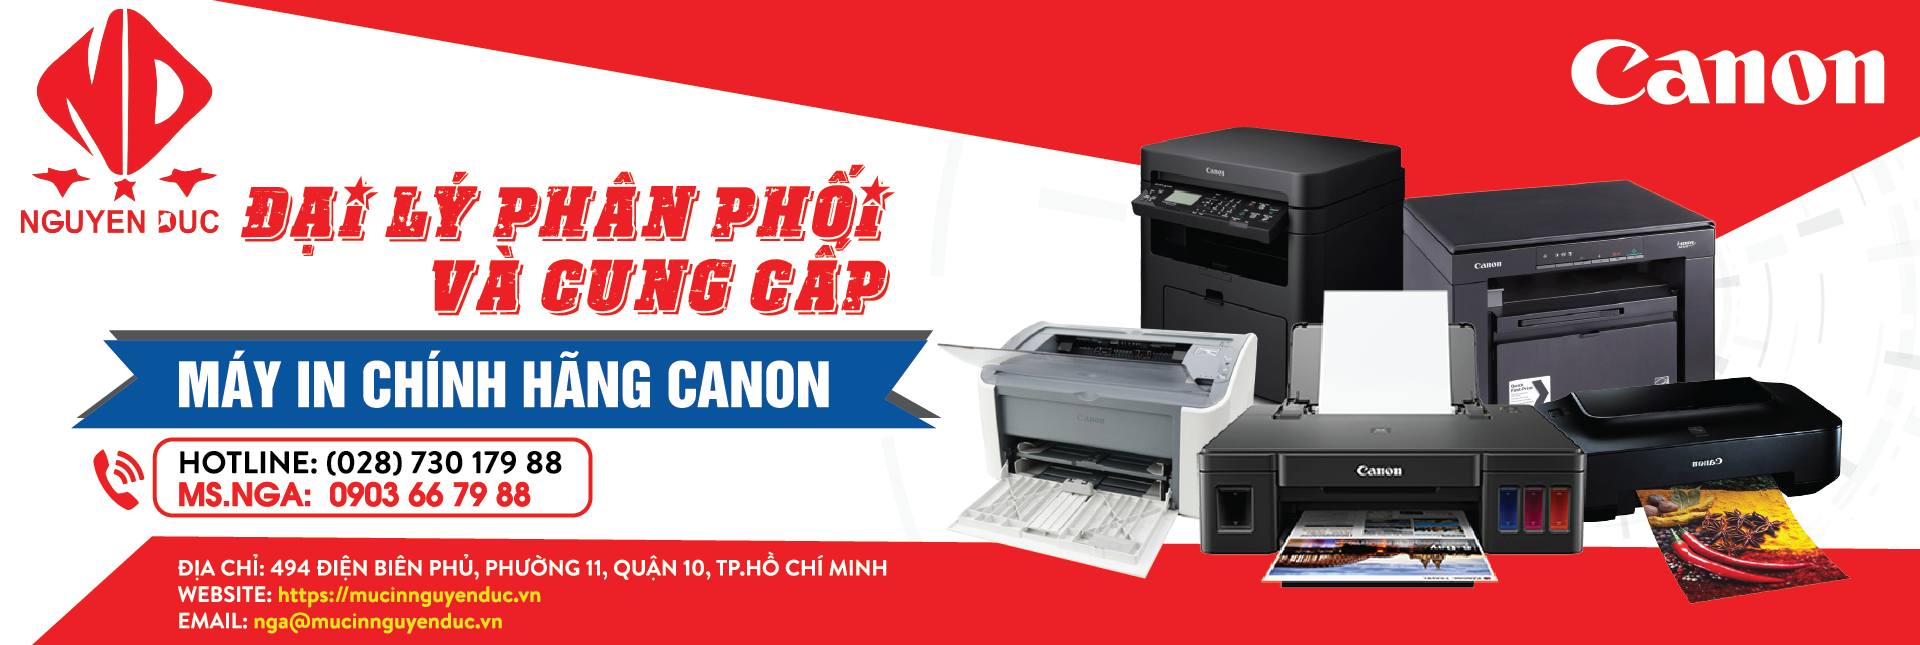 Đại lý phân phối máy in Canon ImageCLASS LBP 6230dw, giao hàng tại Ninh Bình